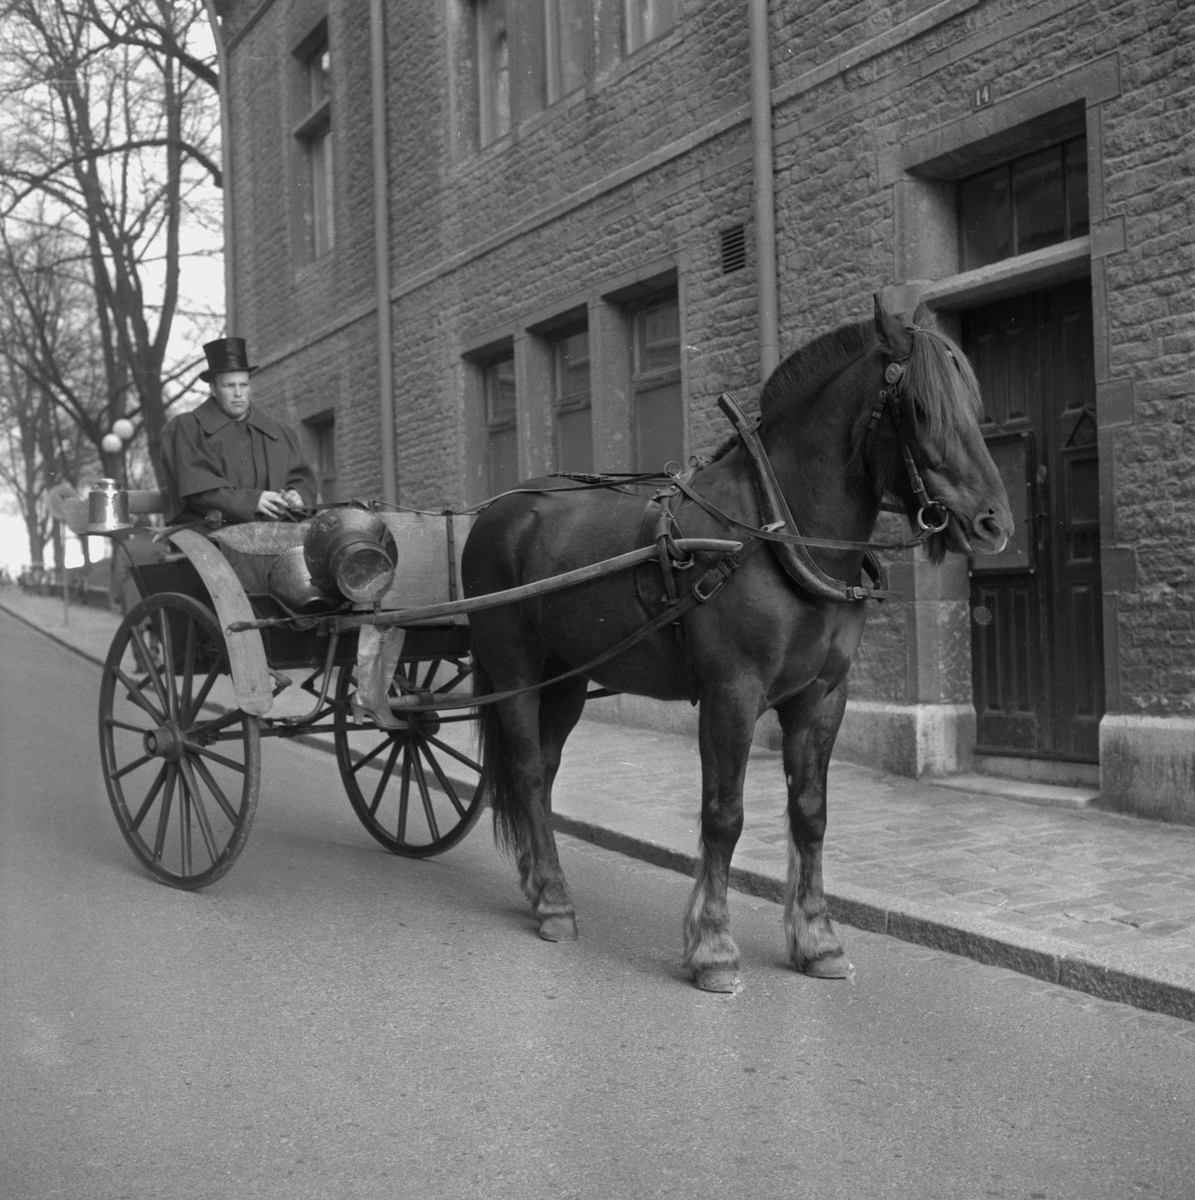 Häst och vagn.
28 april 1959. 
Trivialskolan, Nikolai församlingshem, Vasagatan.